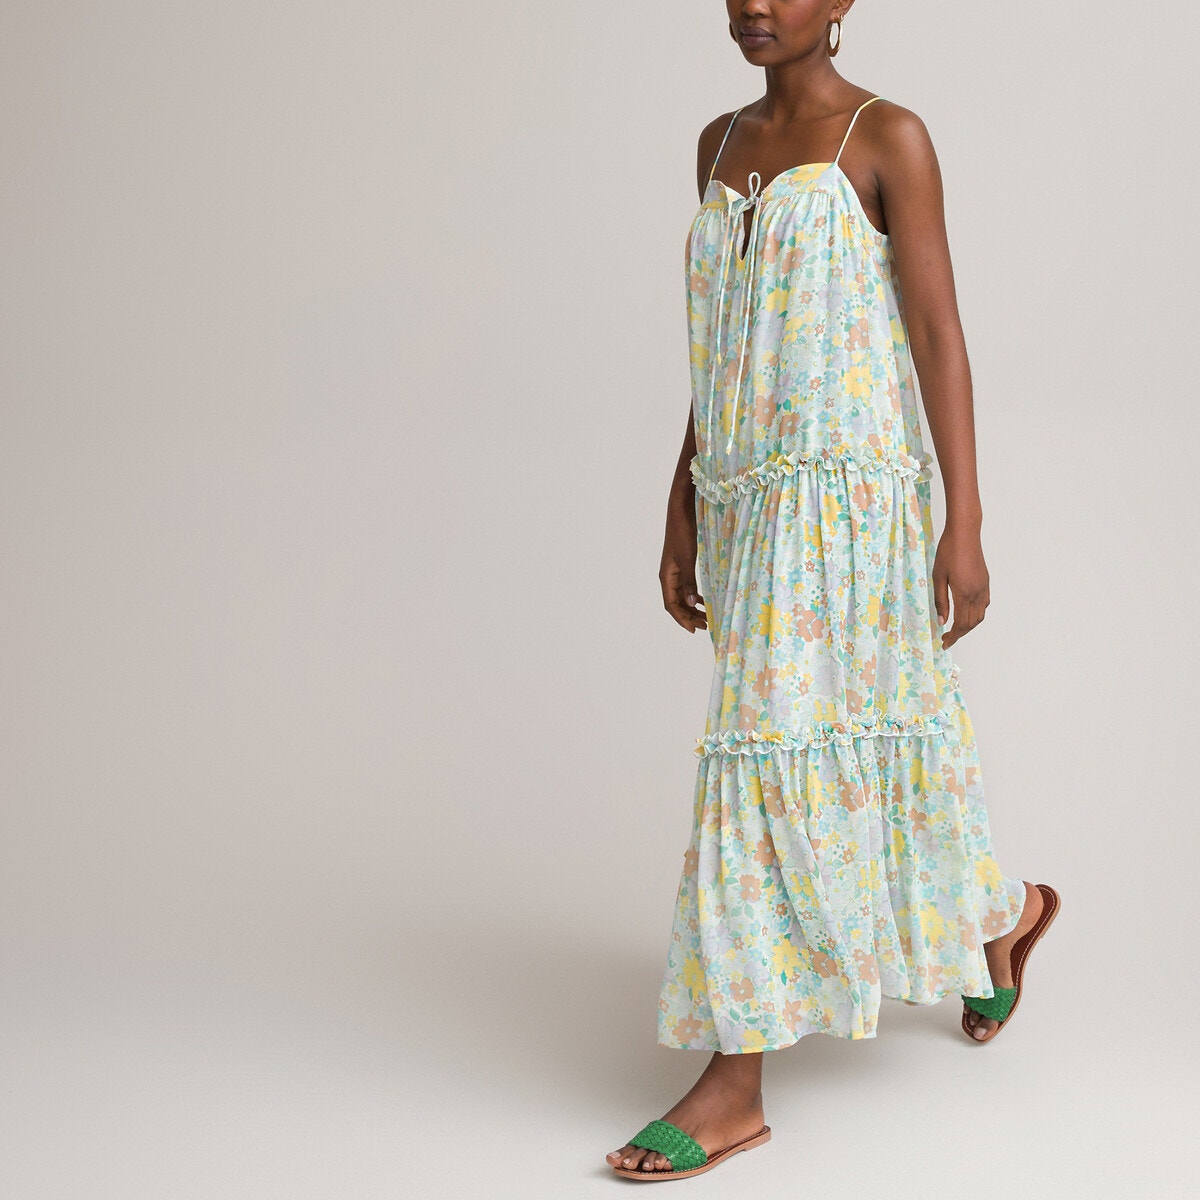 ΓΥΝΑΙΚΑ | Φορέματα | Αμάνικα Μακρύ φλοράλ φόρεμα με λεπτές